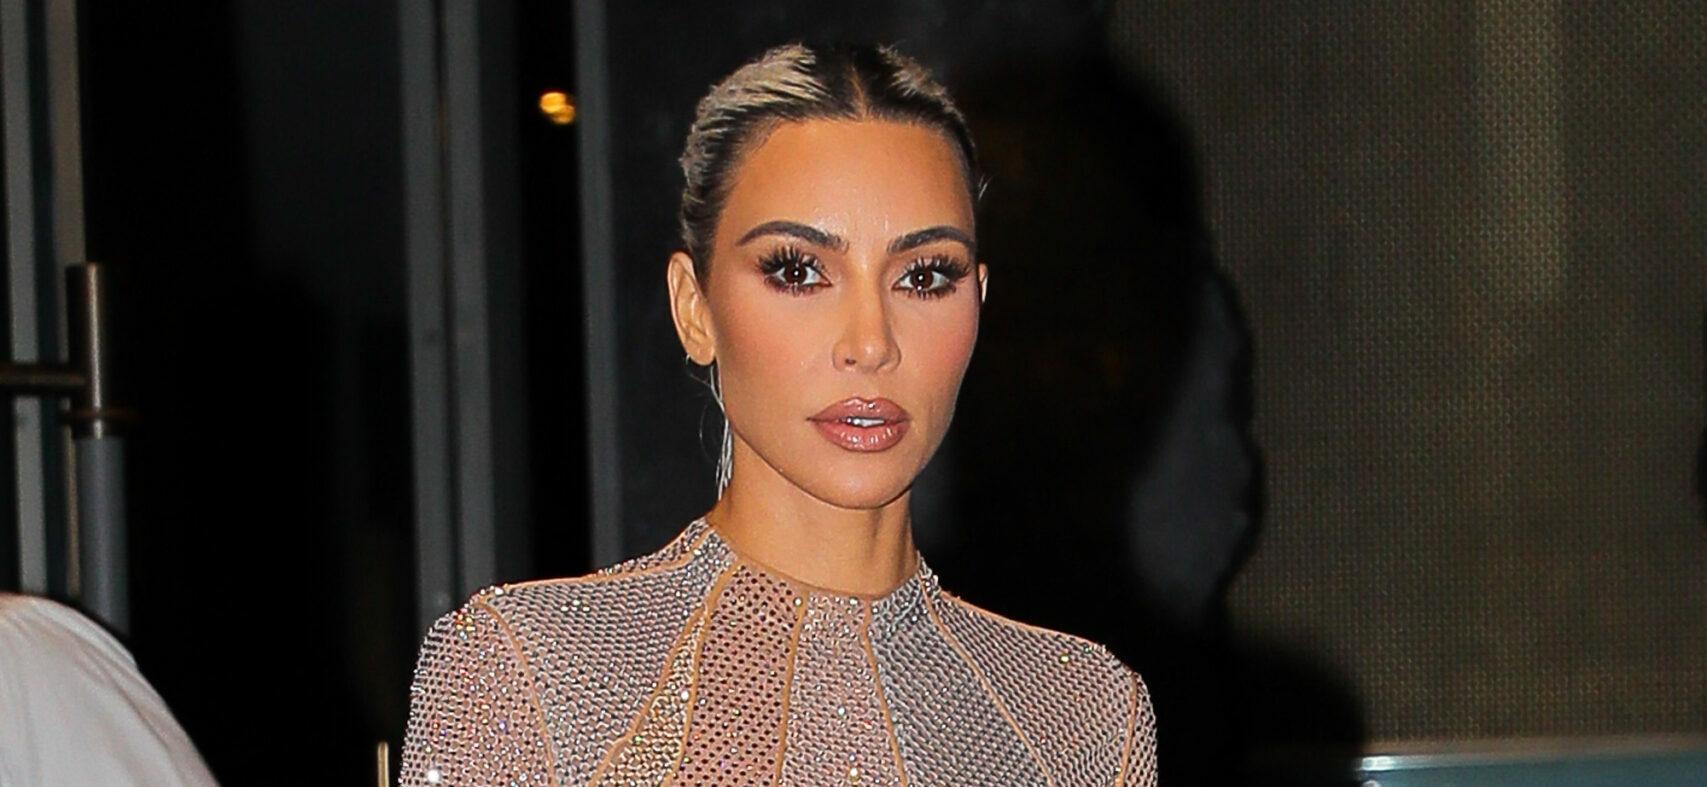 Kim Kardashian looks radiant while heading to the FENDI Fashion show in New York City